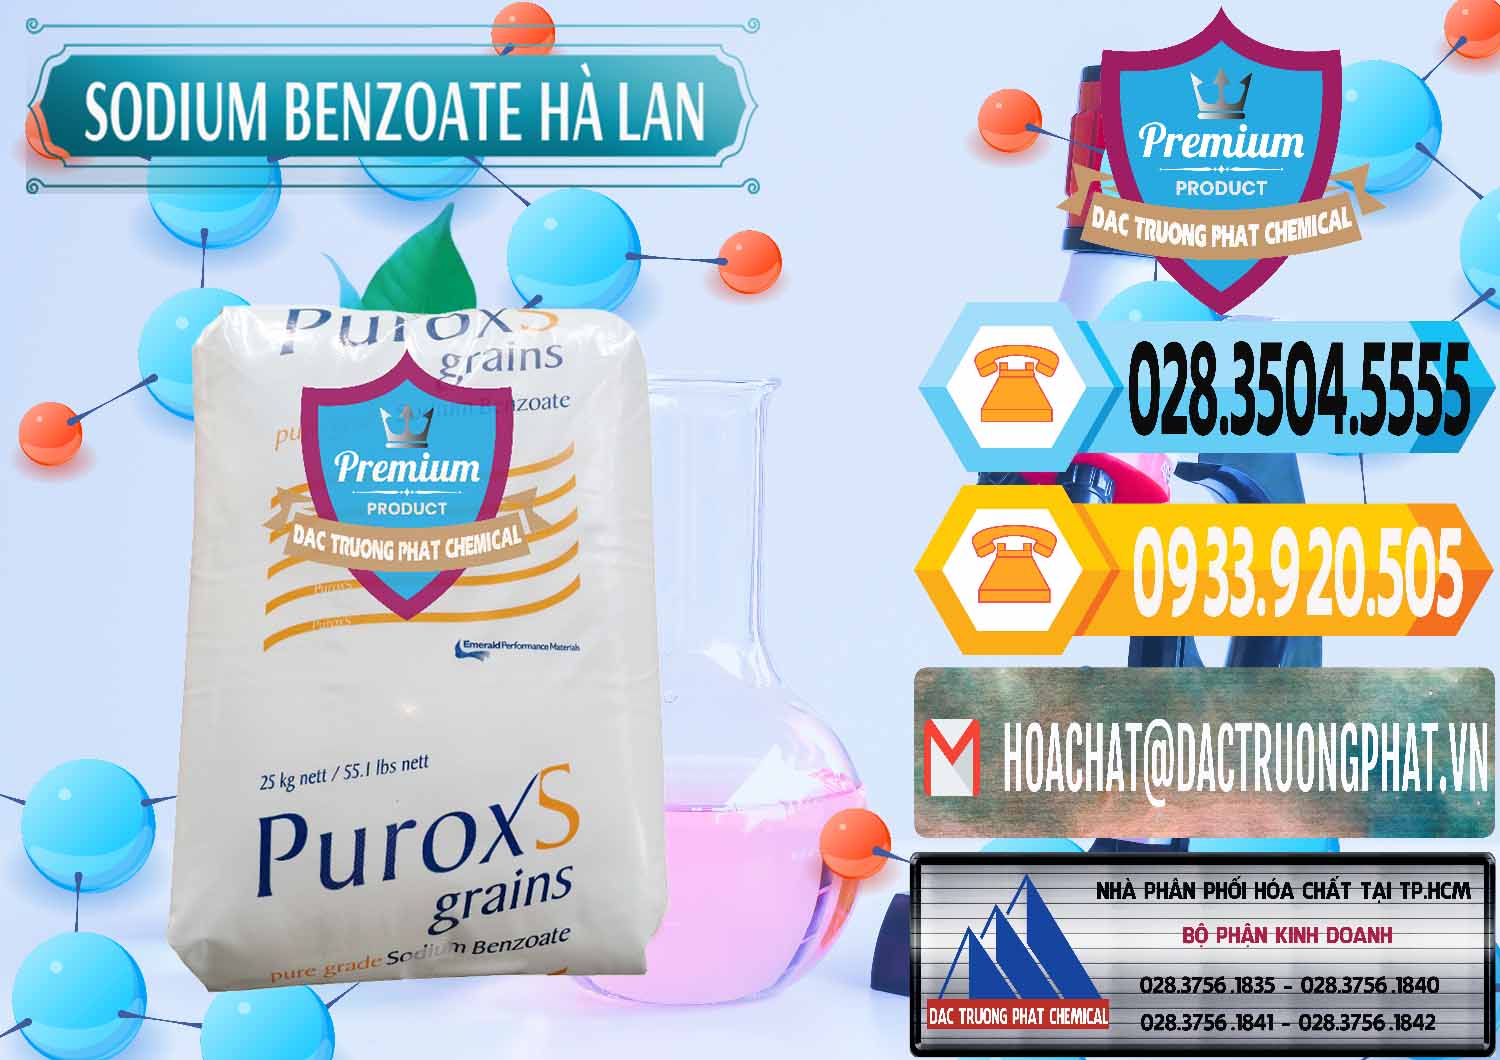 Cty chuyên cung ứng và bán Sodium Benzoate - Mốc Bột Puroxs Hà Lan Netherlands - 0467 - Cung cấp - kinh doanh hóa chất tại TP.HCM - hoachattayrua.net